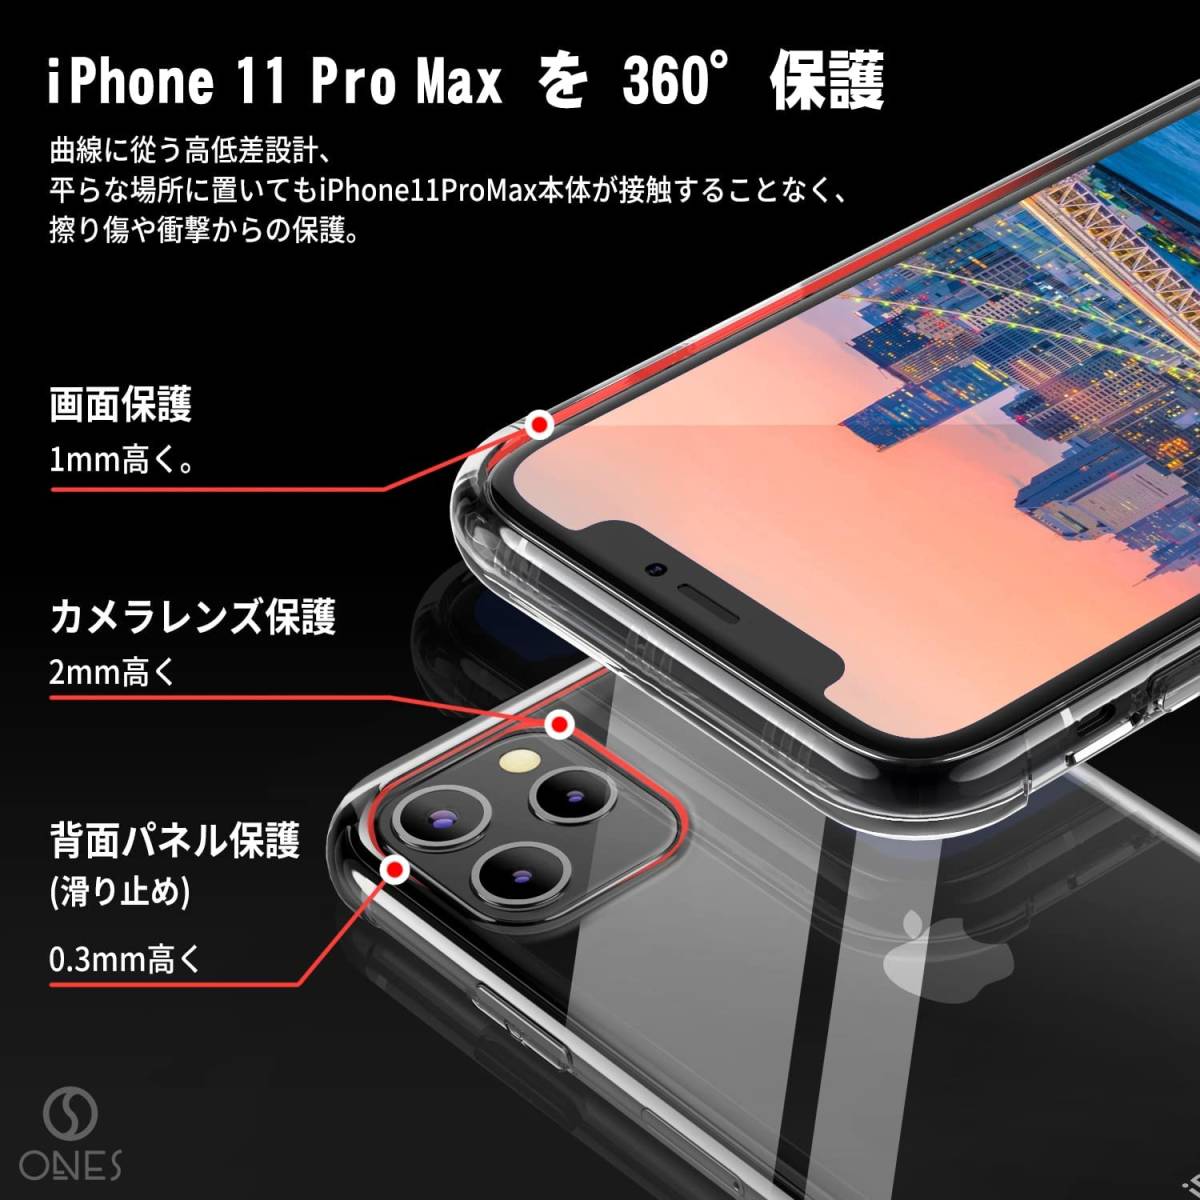 美品 即決 iPhone 11 Pro Max 512GB スペースグレイ SIMフリー 本体